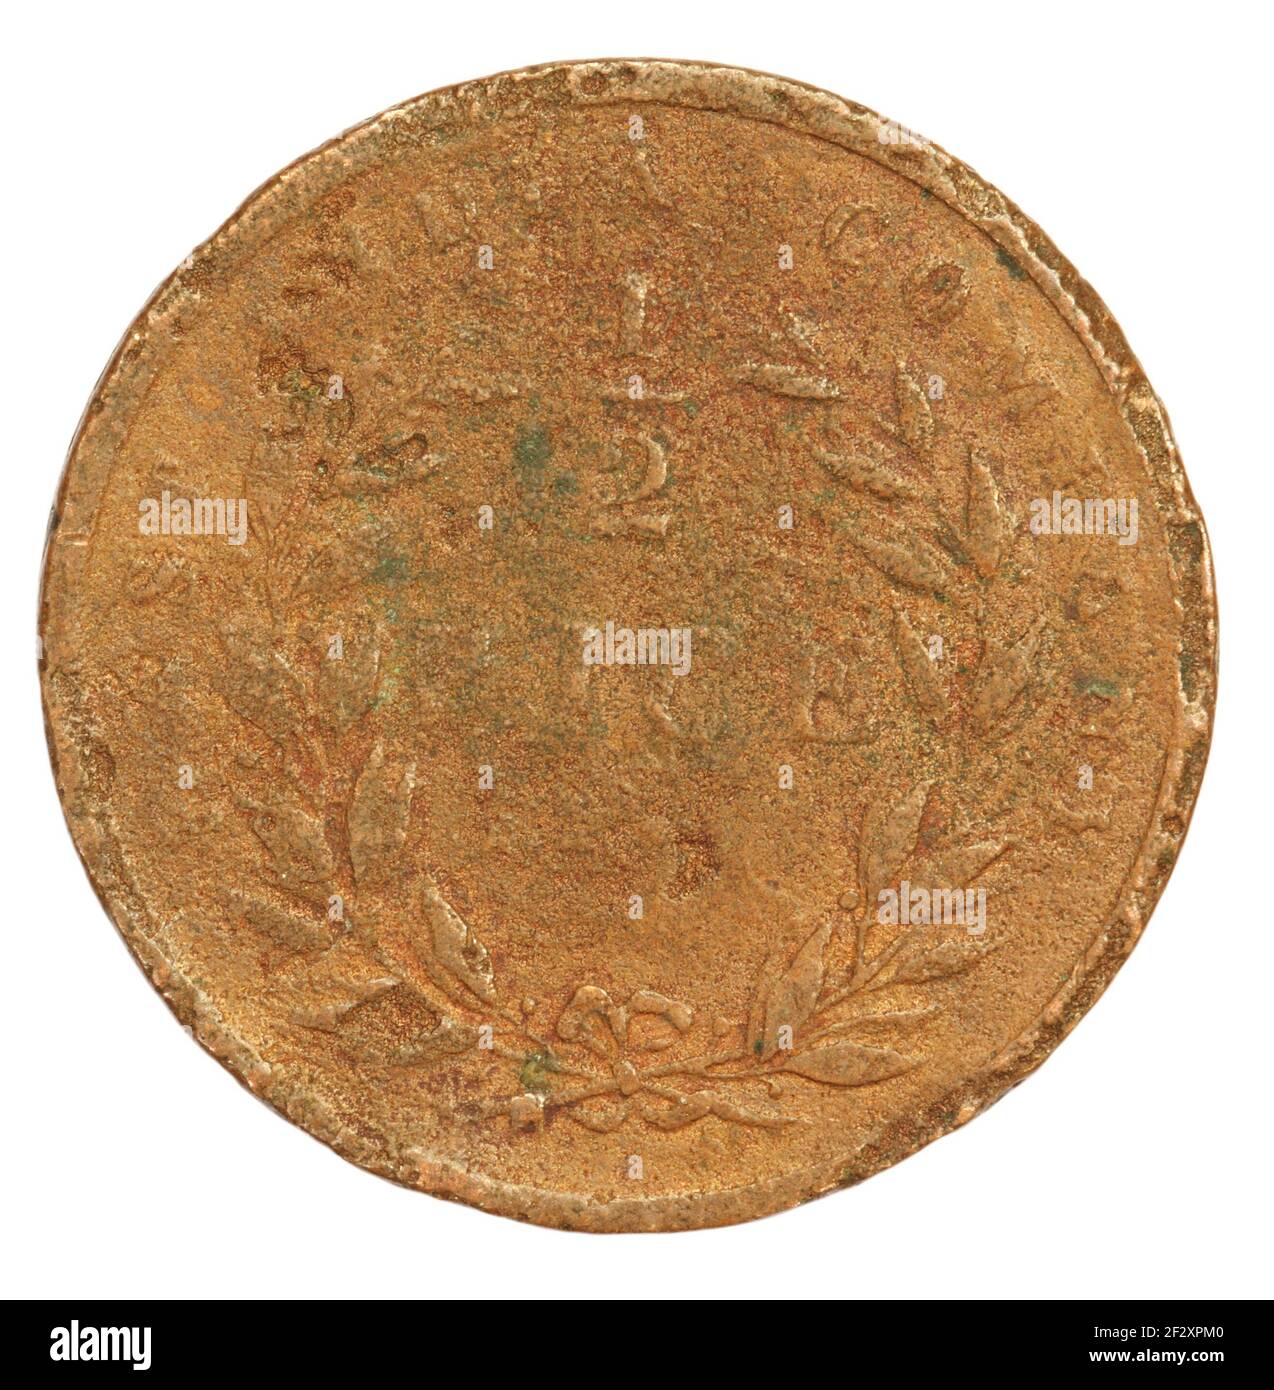 Old Indian Coin della British East India Company closeup Foto Stock